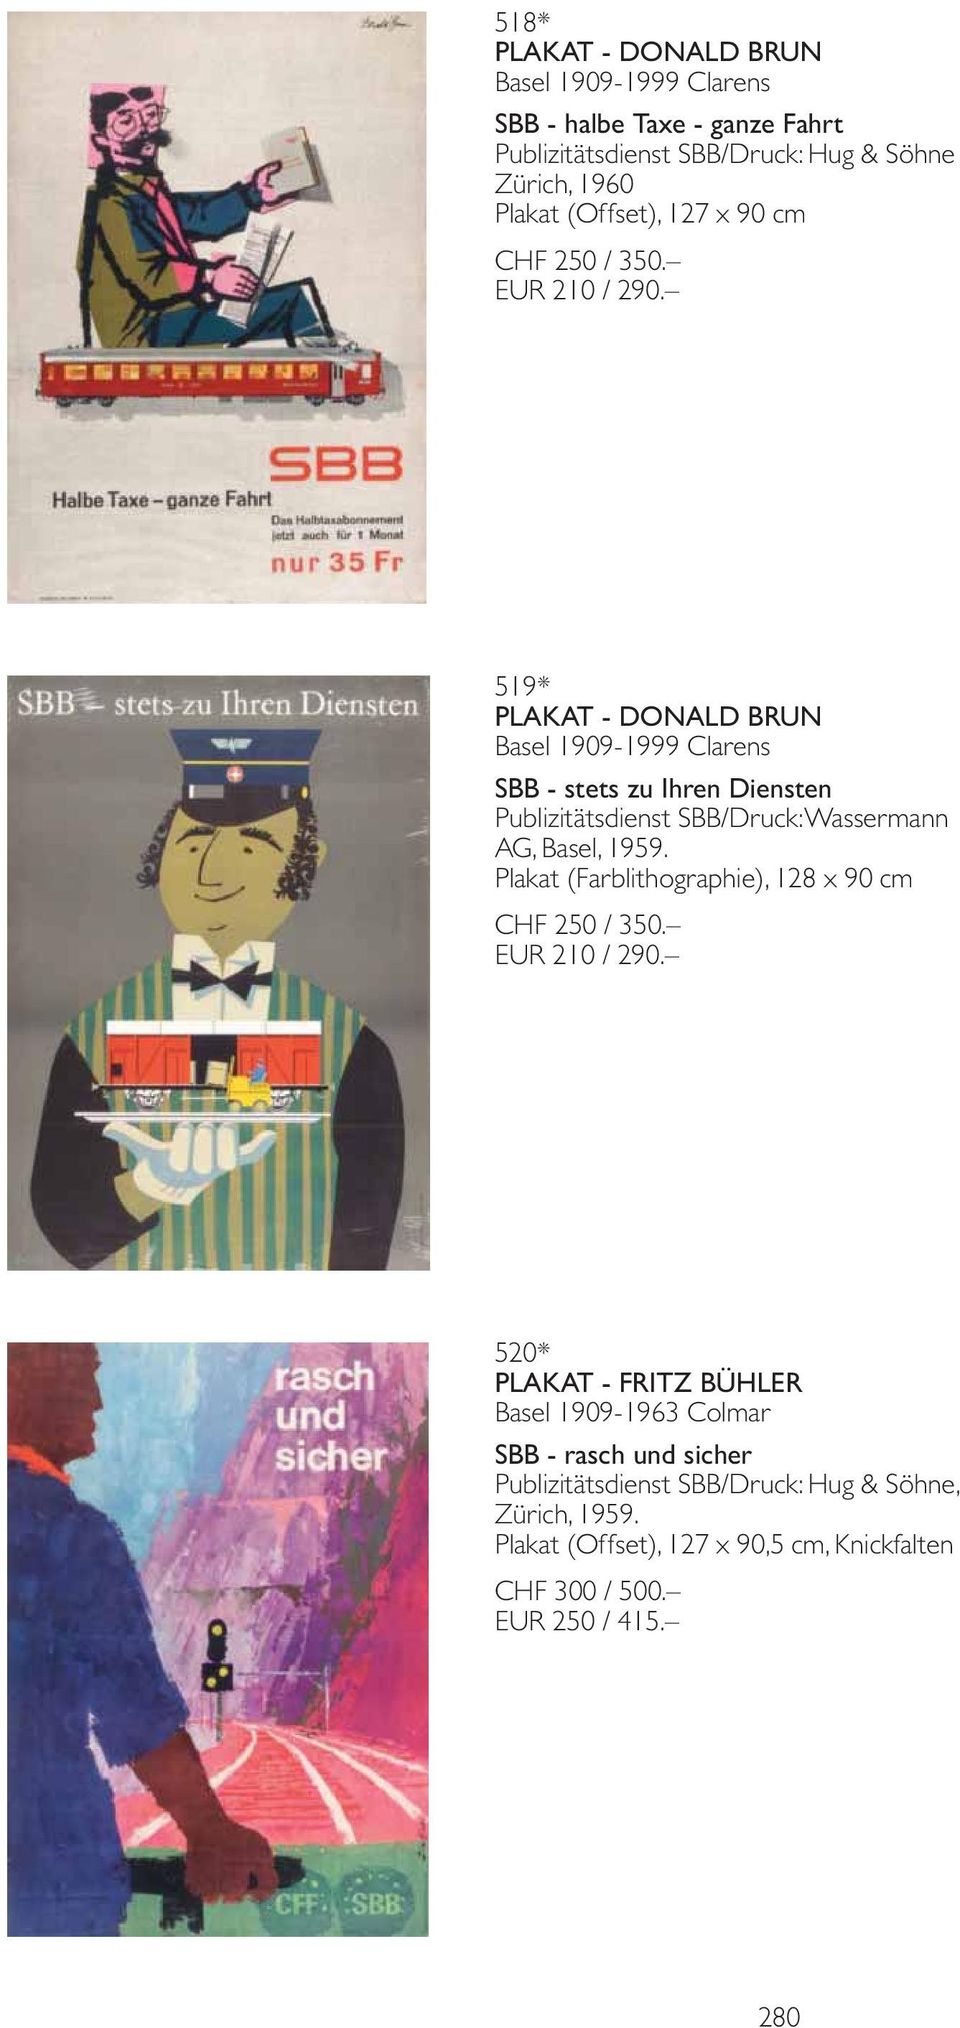 519* PLAKAT - DONALD BRUN Basel 1909-1999 Clarens SBB - stets zu Ihren Diensten Publizitätsdienst SBB/Druck: Wassermann AG, Basel, 1959.